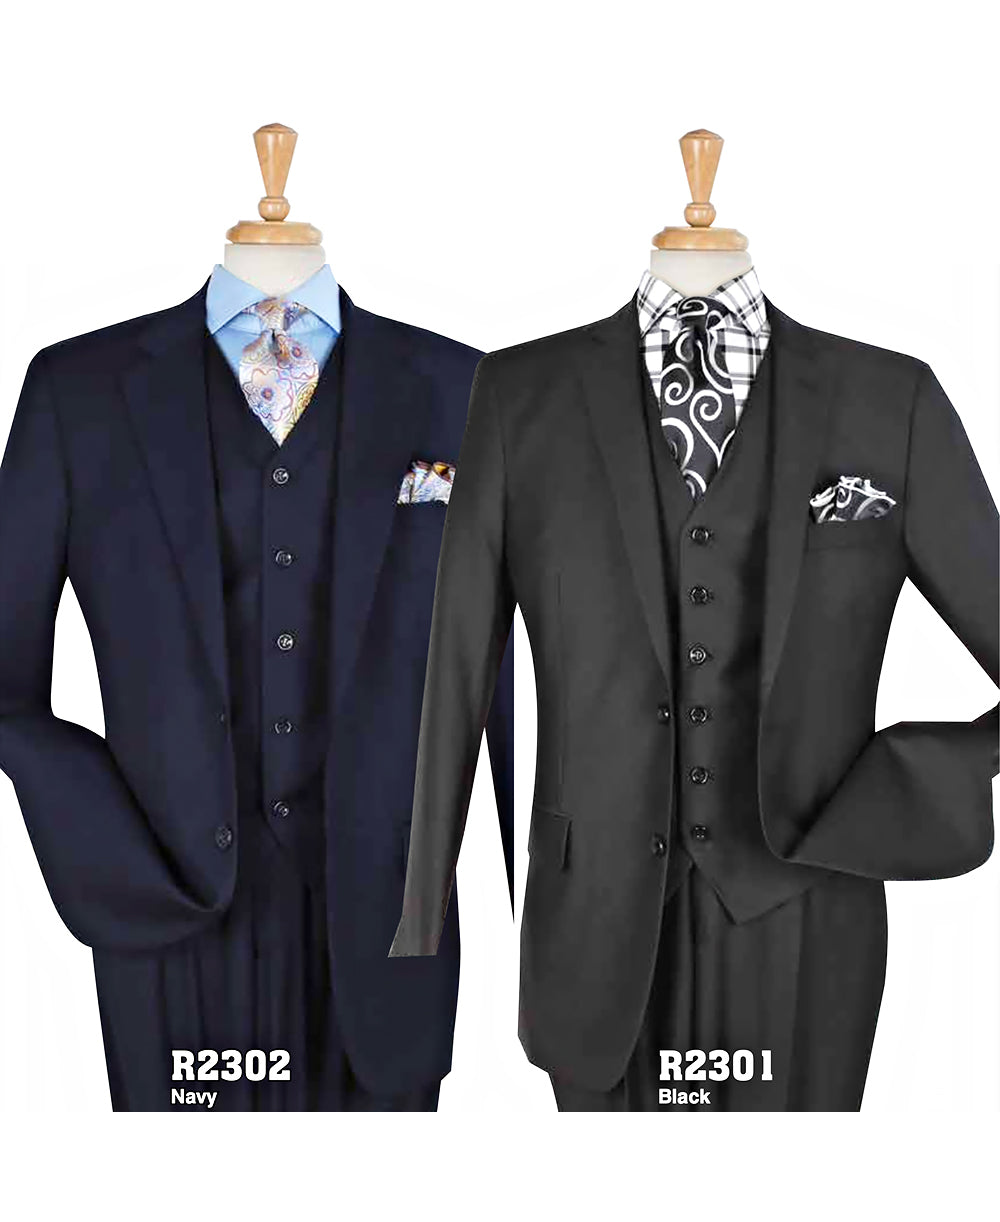 Men's High Fashion Suit R2301